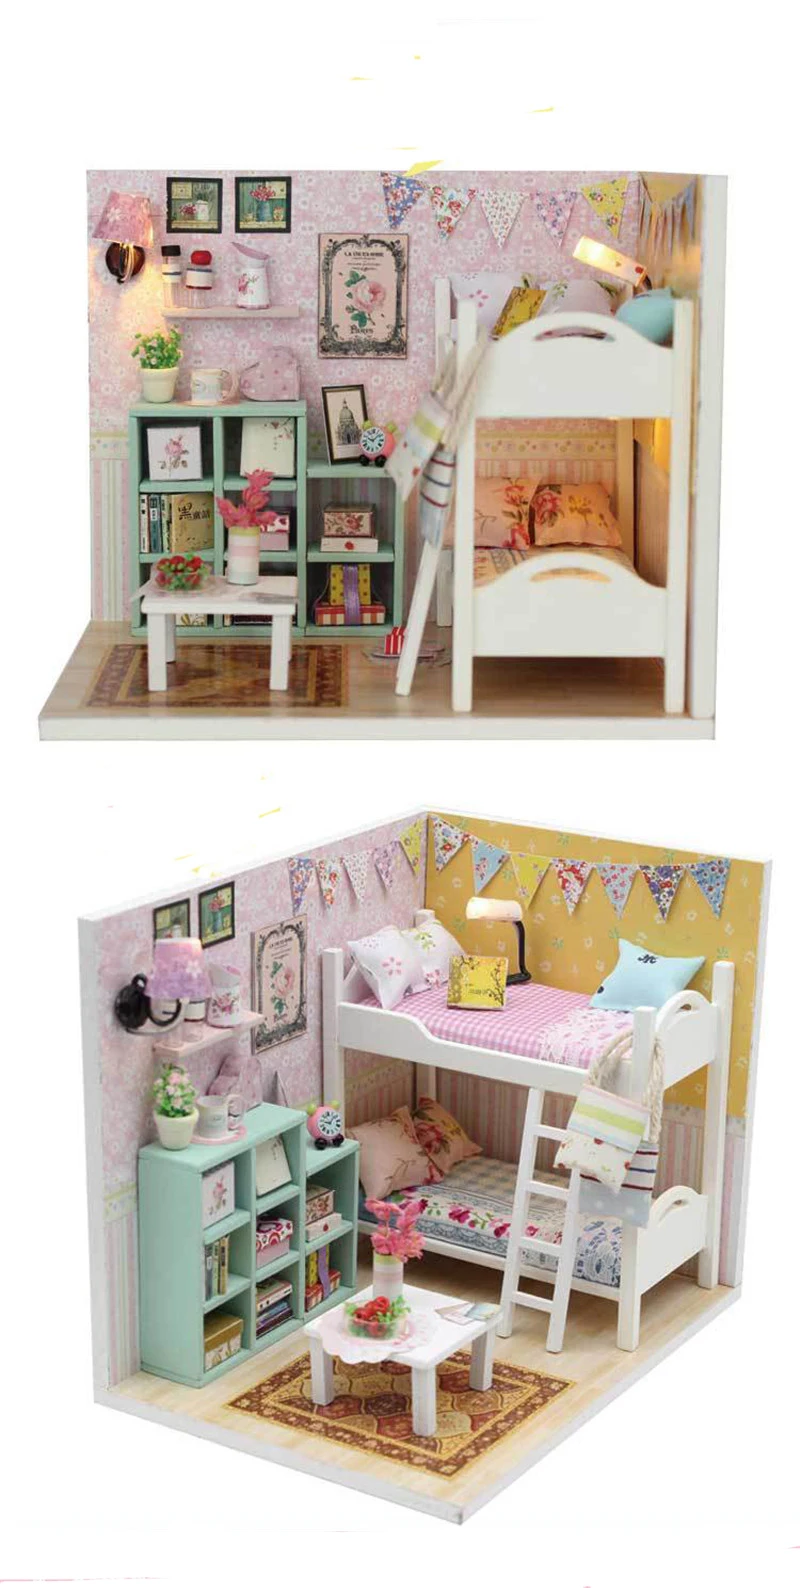 Doub K kawaii мебель игрушка миниатюрная спальня Дерево DIY куклы дом ролевые игры игрушки для девочек Дети кукольный домик творческие подарки